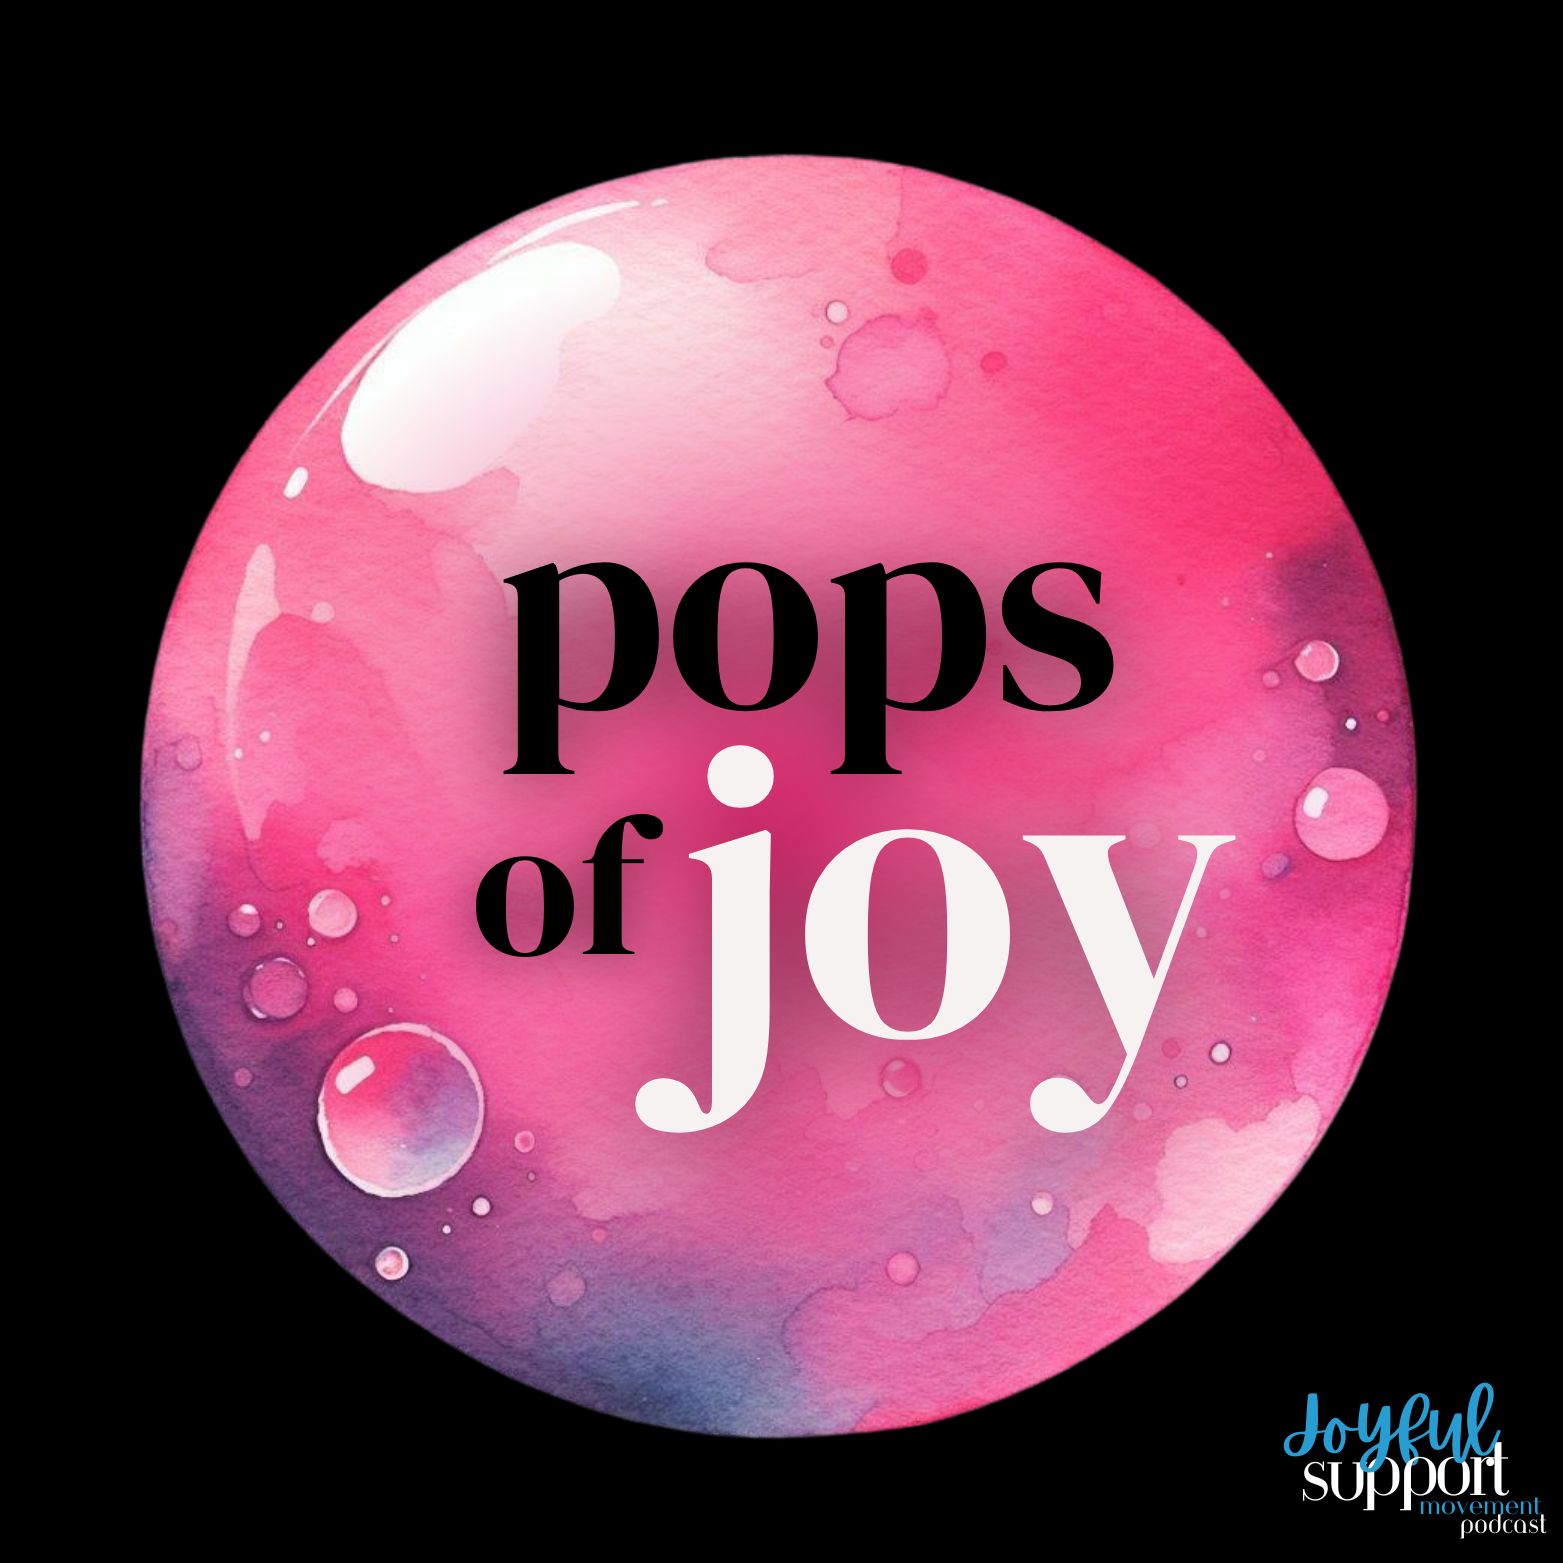 Pops of Joy's artwork